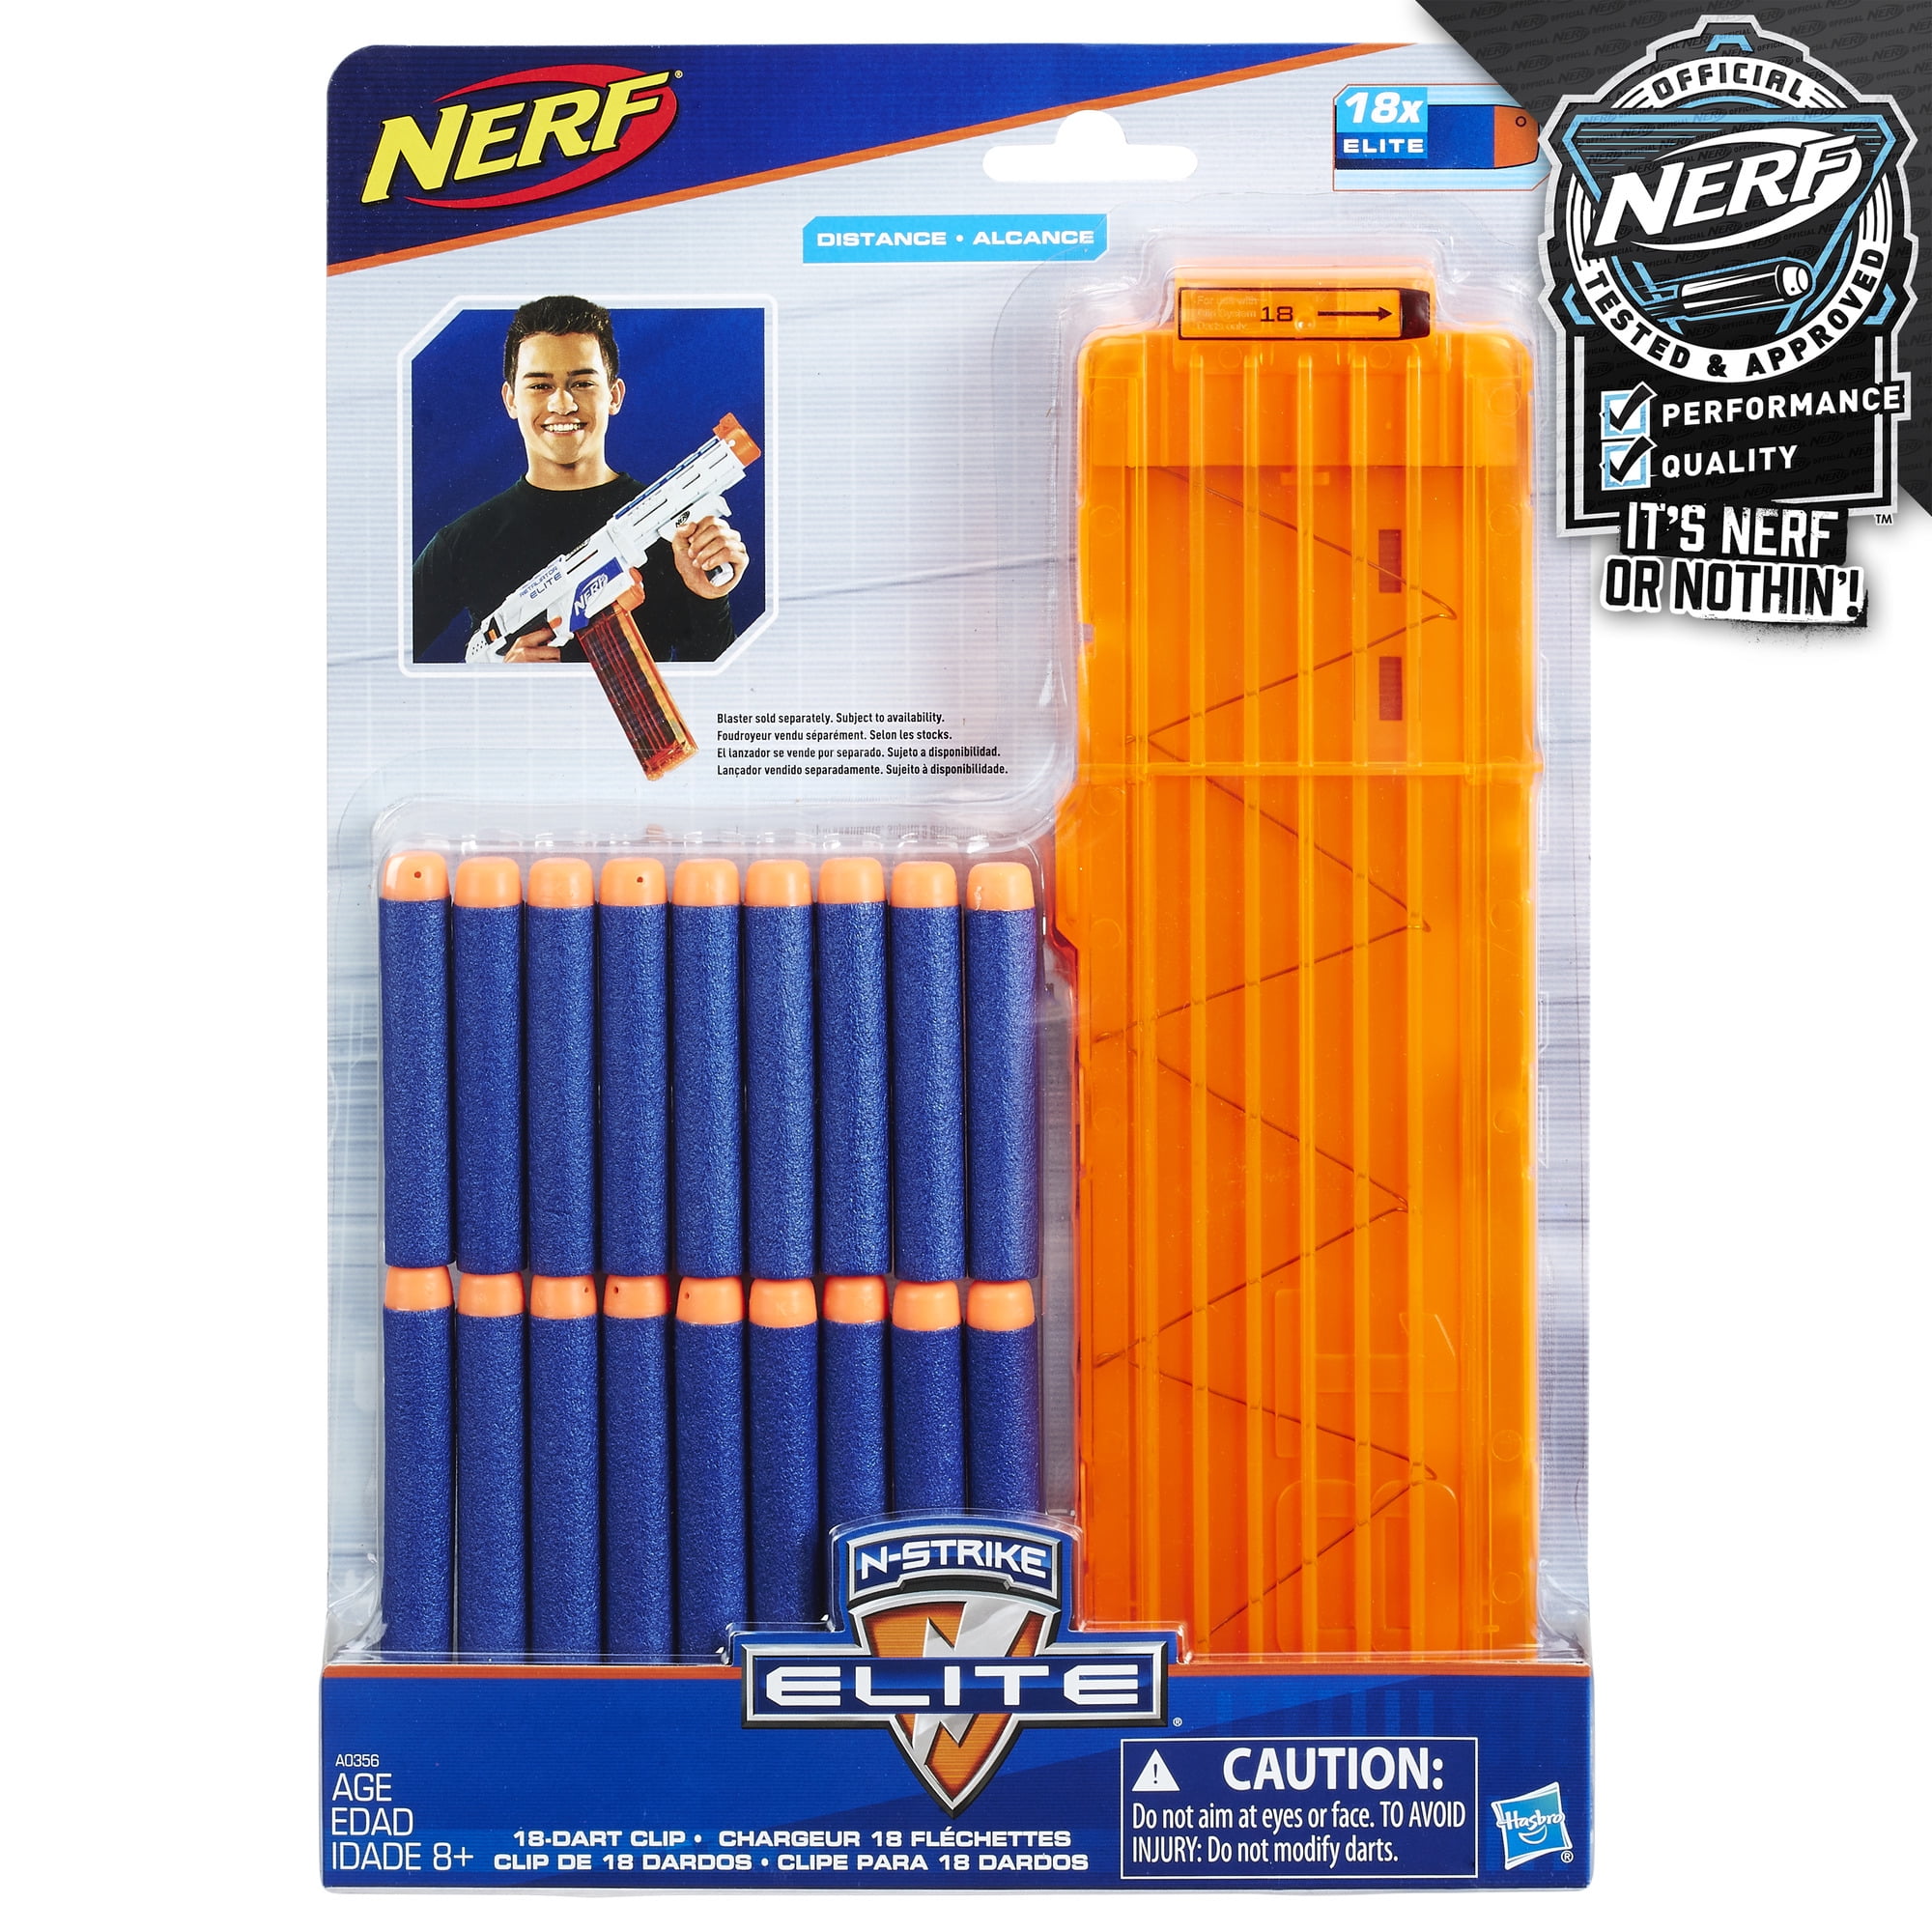 NERF N-strike Clip System Darts 36pk for sale online 